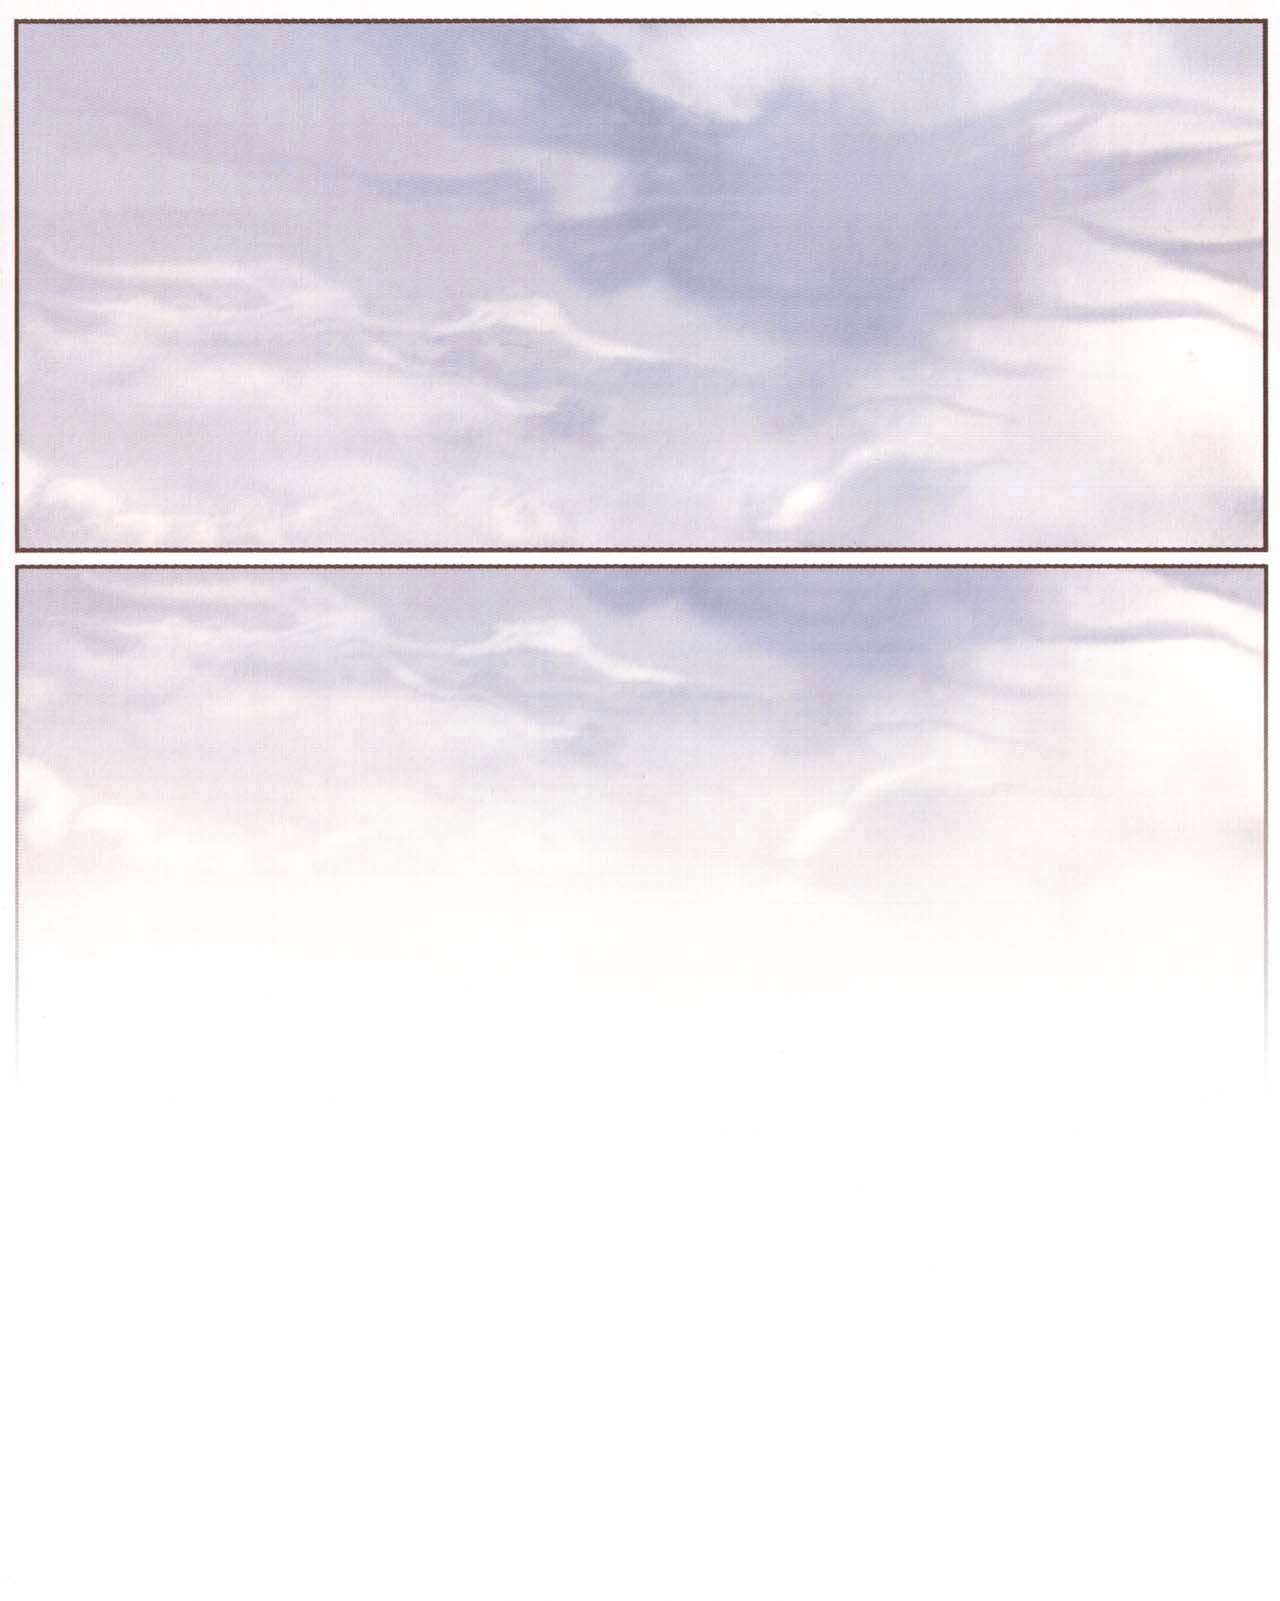 le ciel au-dessus de Bruxelles - 01 - Avant numero d'image 64